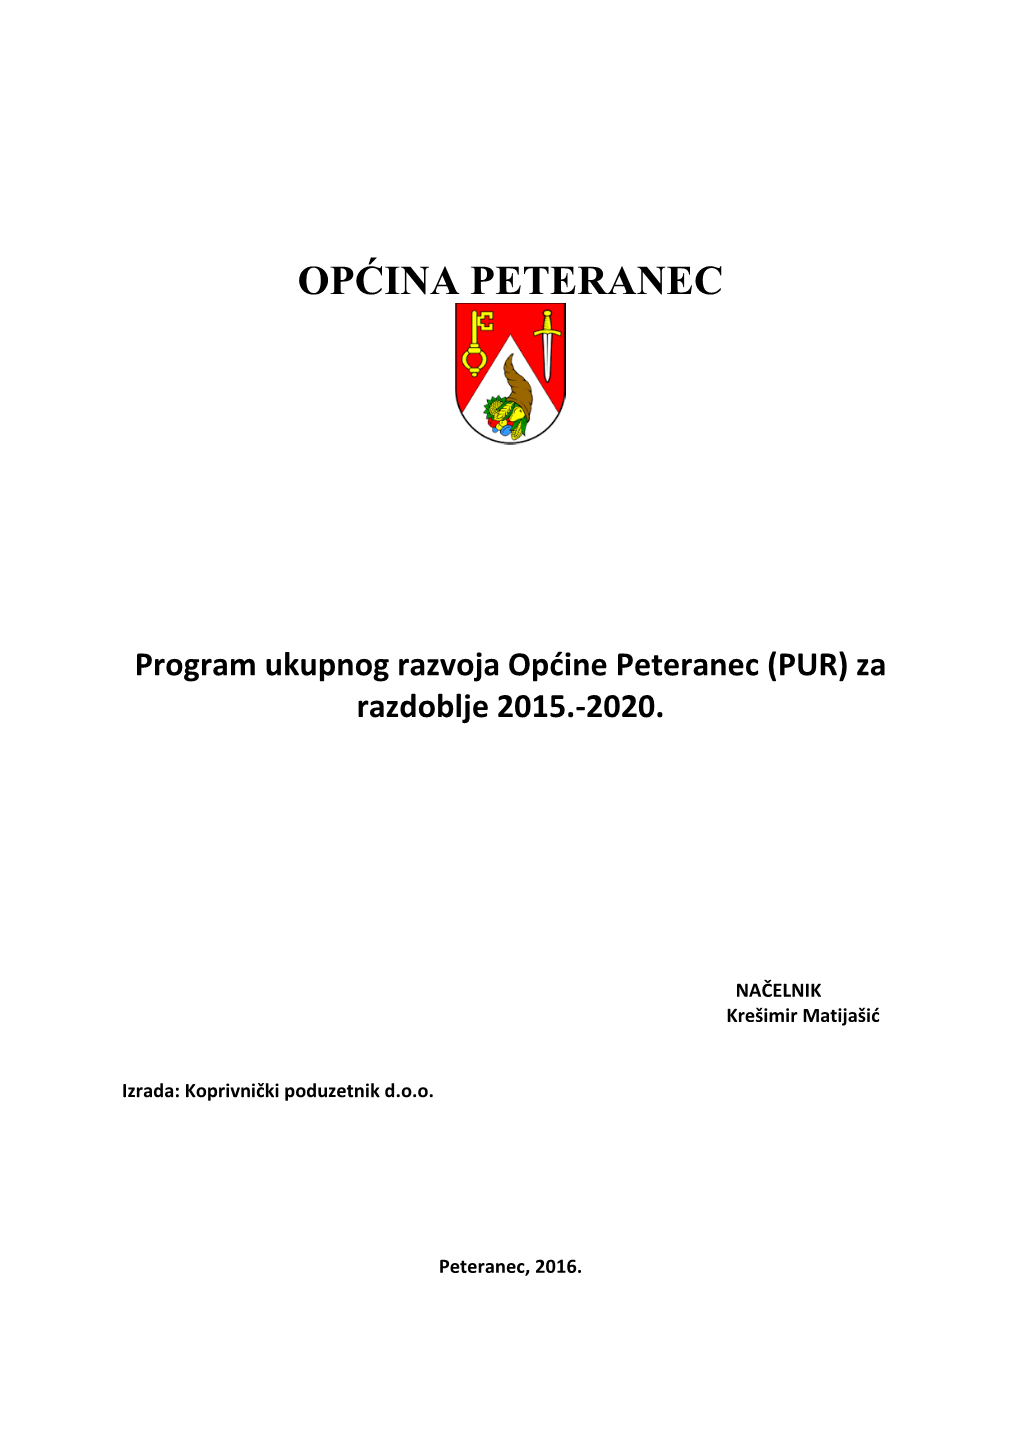 Program Ukupnog Razvoja Općine Peteranec (PUR) Za Razdoblje 2015.-2020